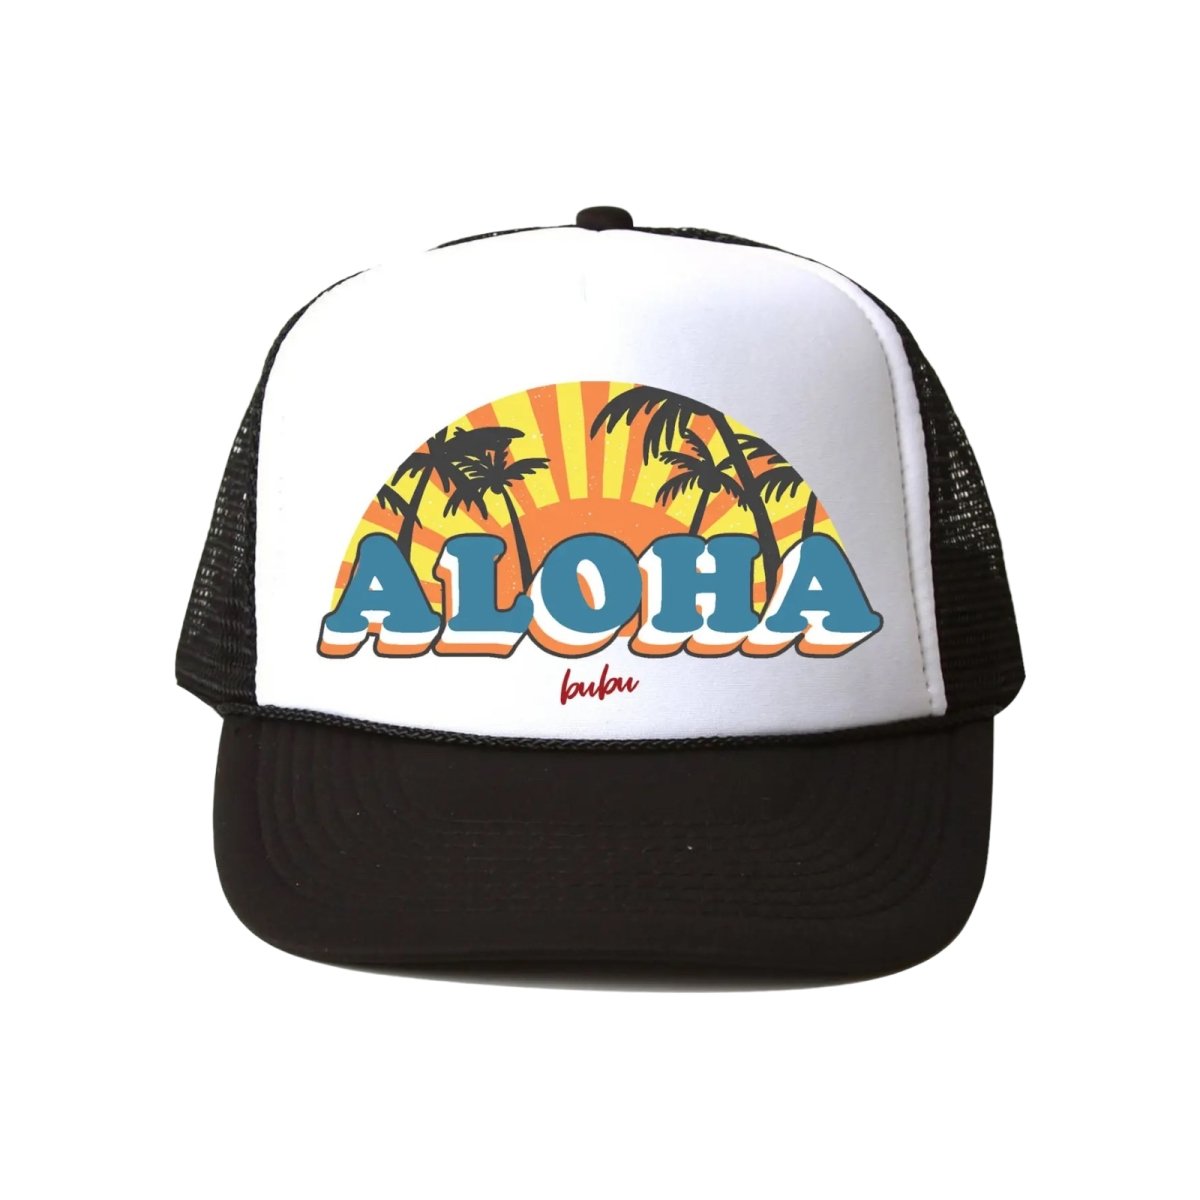 ALOHA SUN TRUCKER HAT - HATS